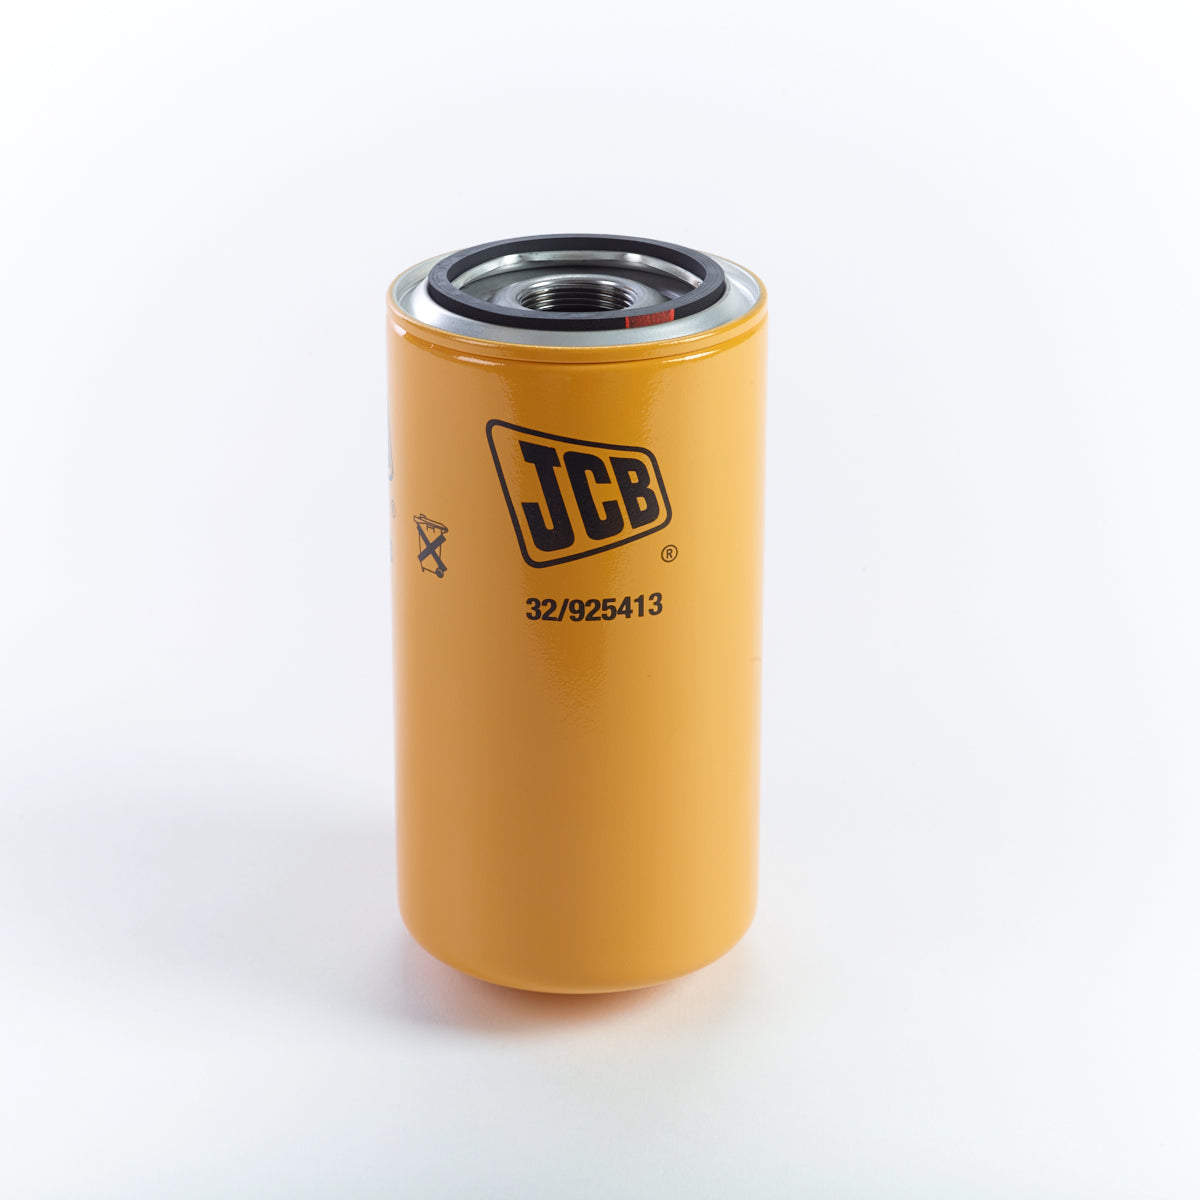 JCB Oil Filter: 32/925413